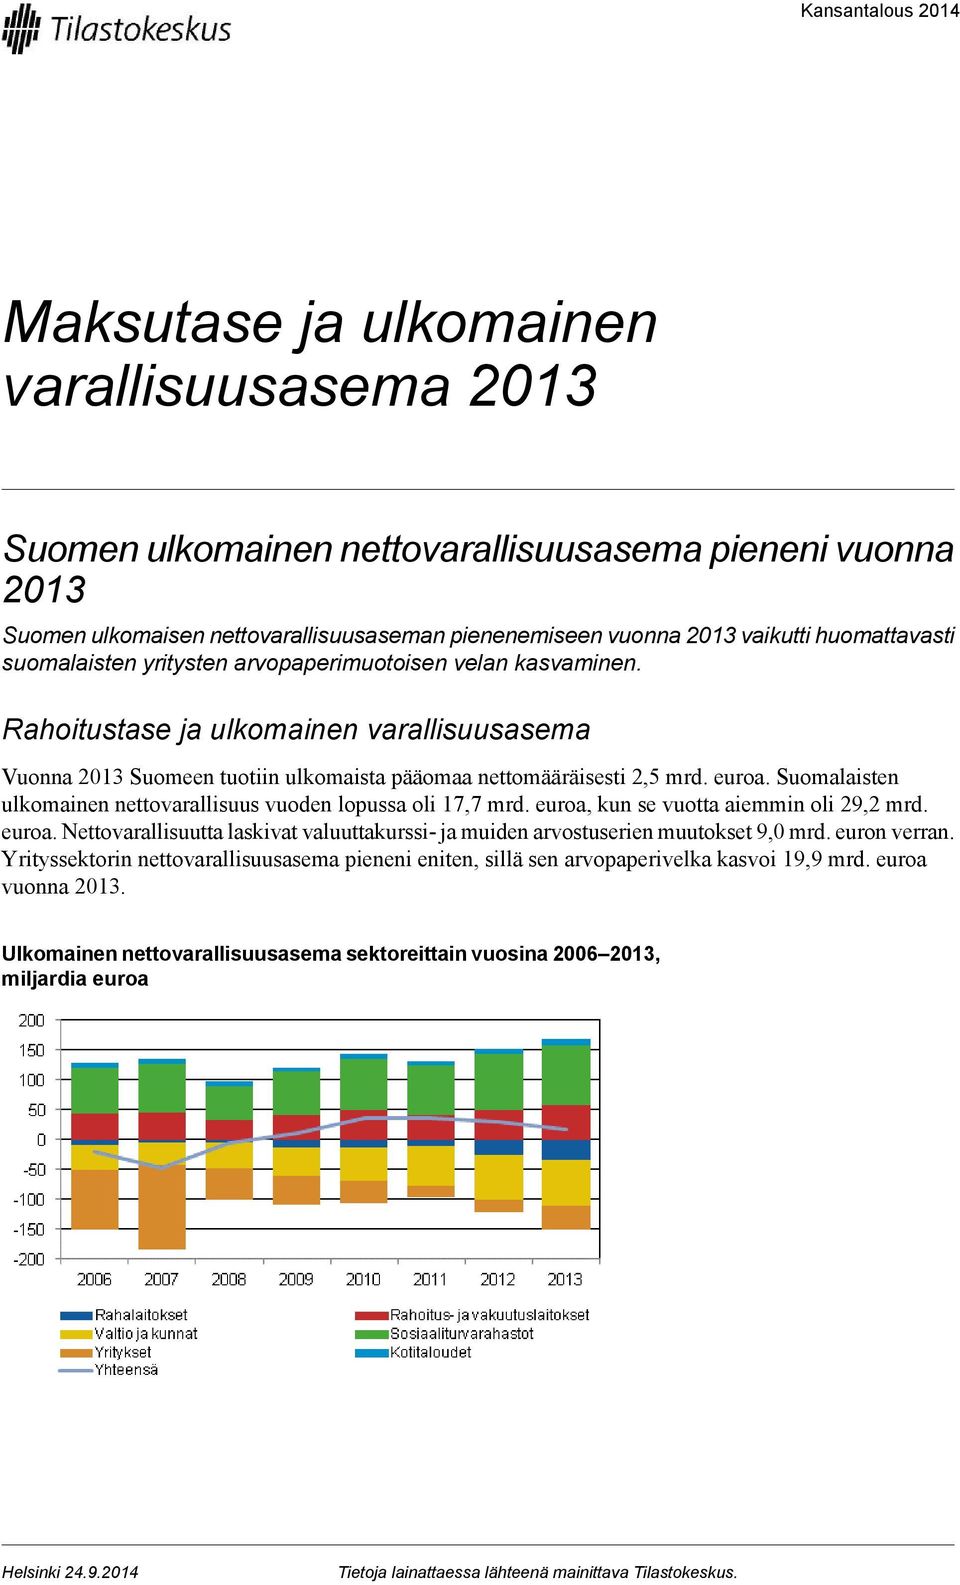 Suomalaisten ulkomainen nettovarallisuus vuoden lopussa oli 17,7 mrd euroa, kun se vuotta aiemmin oli 29,2 mrd euroa Nettovarallisuutta laskivat valuuttakurssi- ja muiden arvostuserien muutokset 9,0